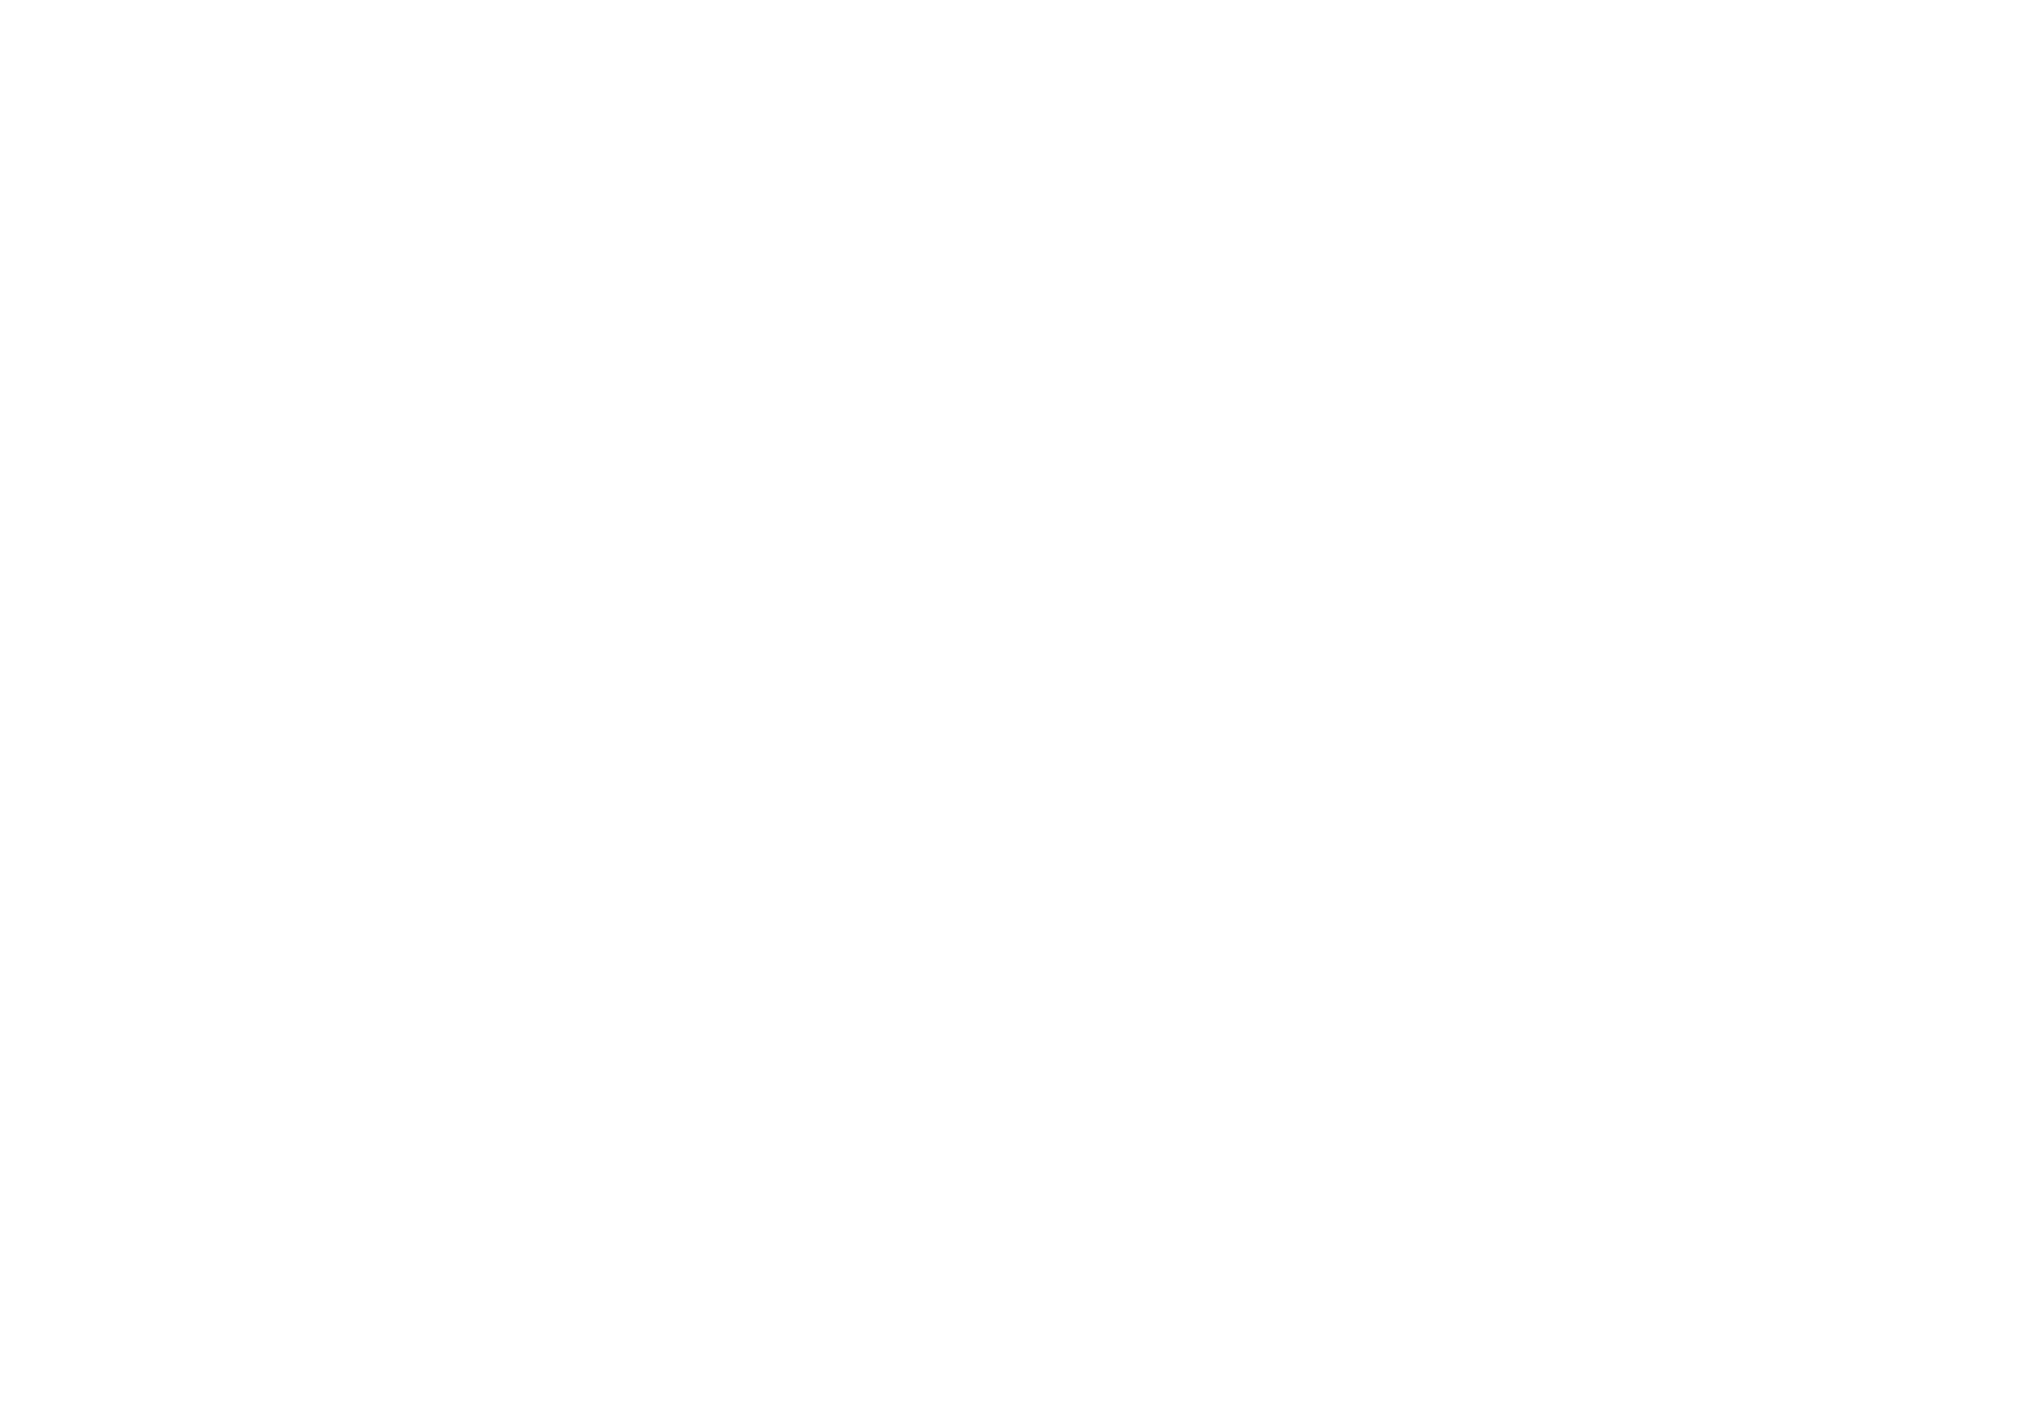 Lévy Gorvy